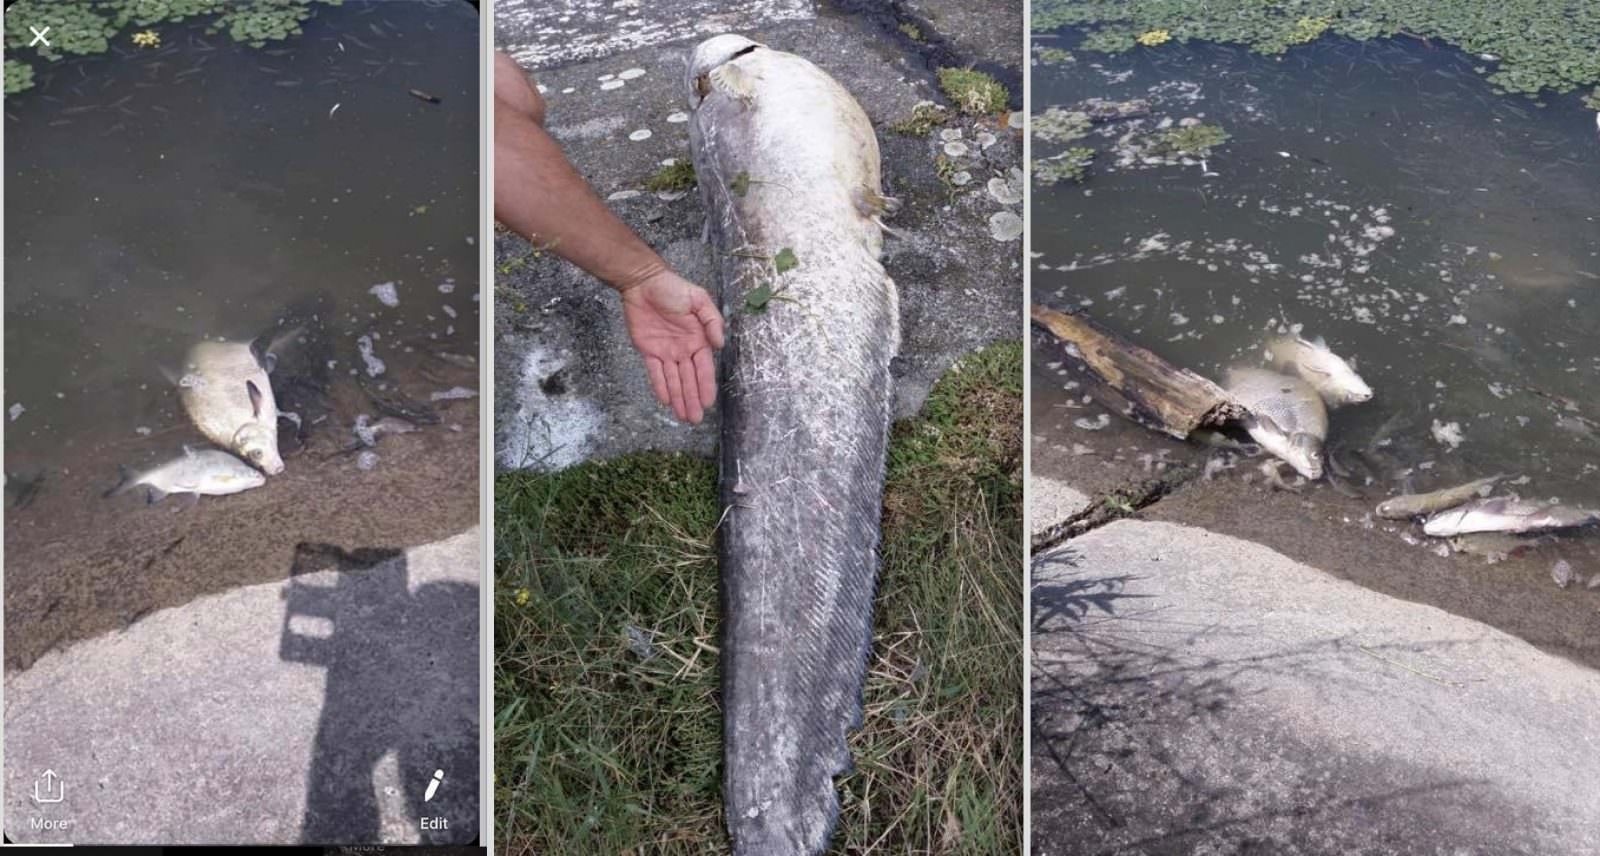 foto - sute de pești morți în apele oltului în județul sibiu - explicația pare halucinantă